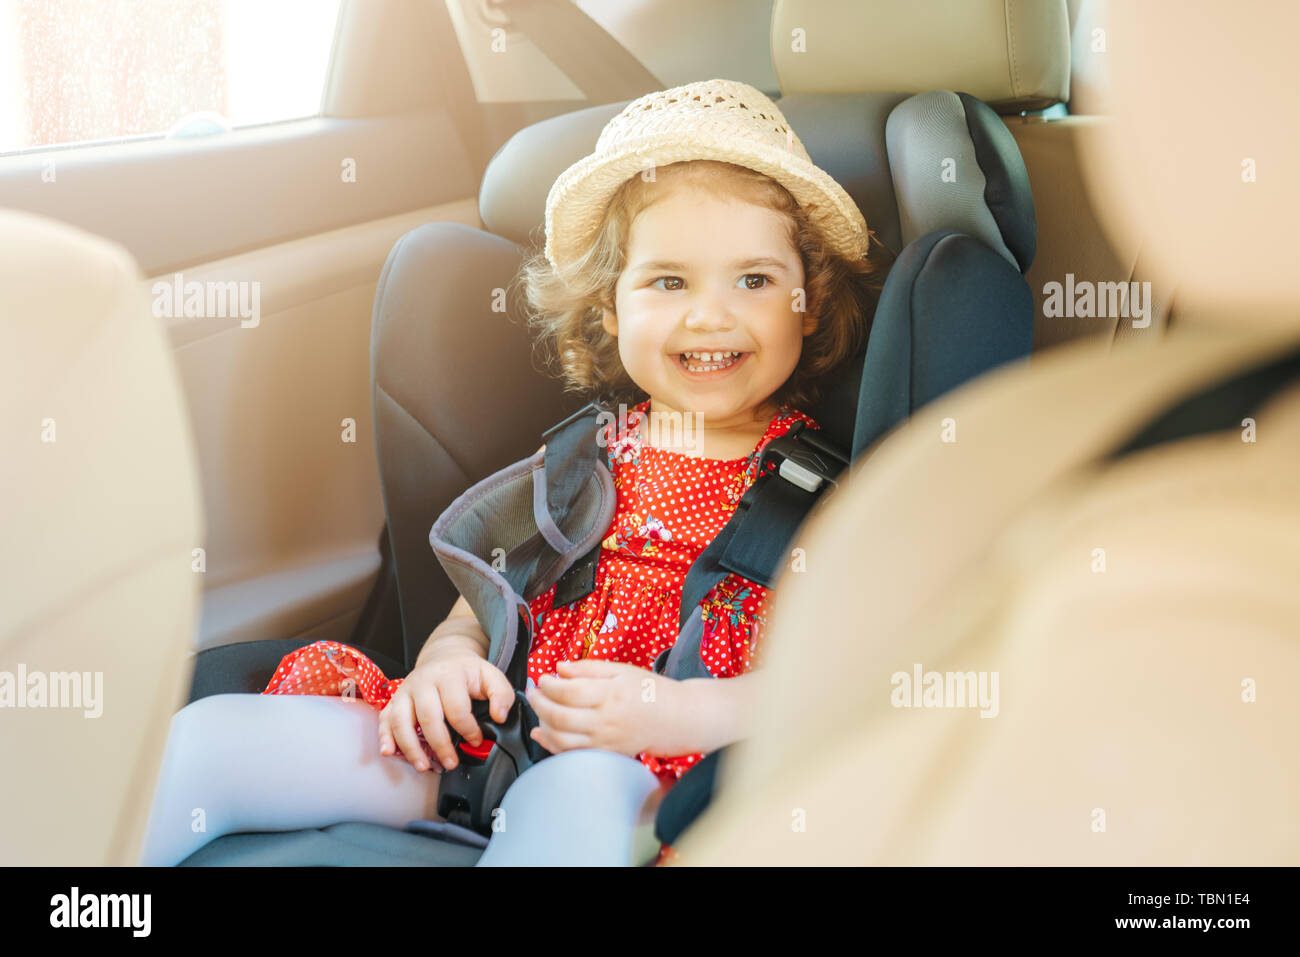 Bébé Enfant mignon petit sitting in car seat. Portrait of cute little baby child sitting in car seat.concept de sécurité Banque D'Images